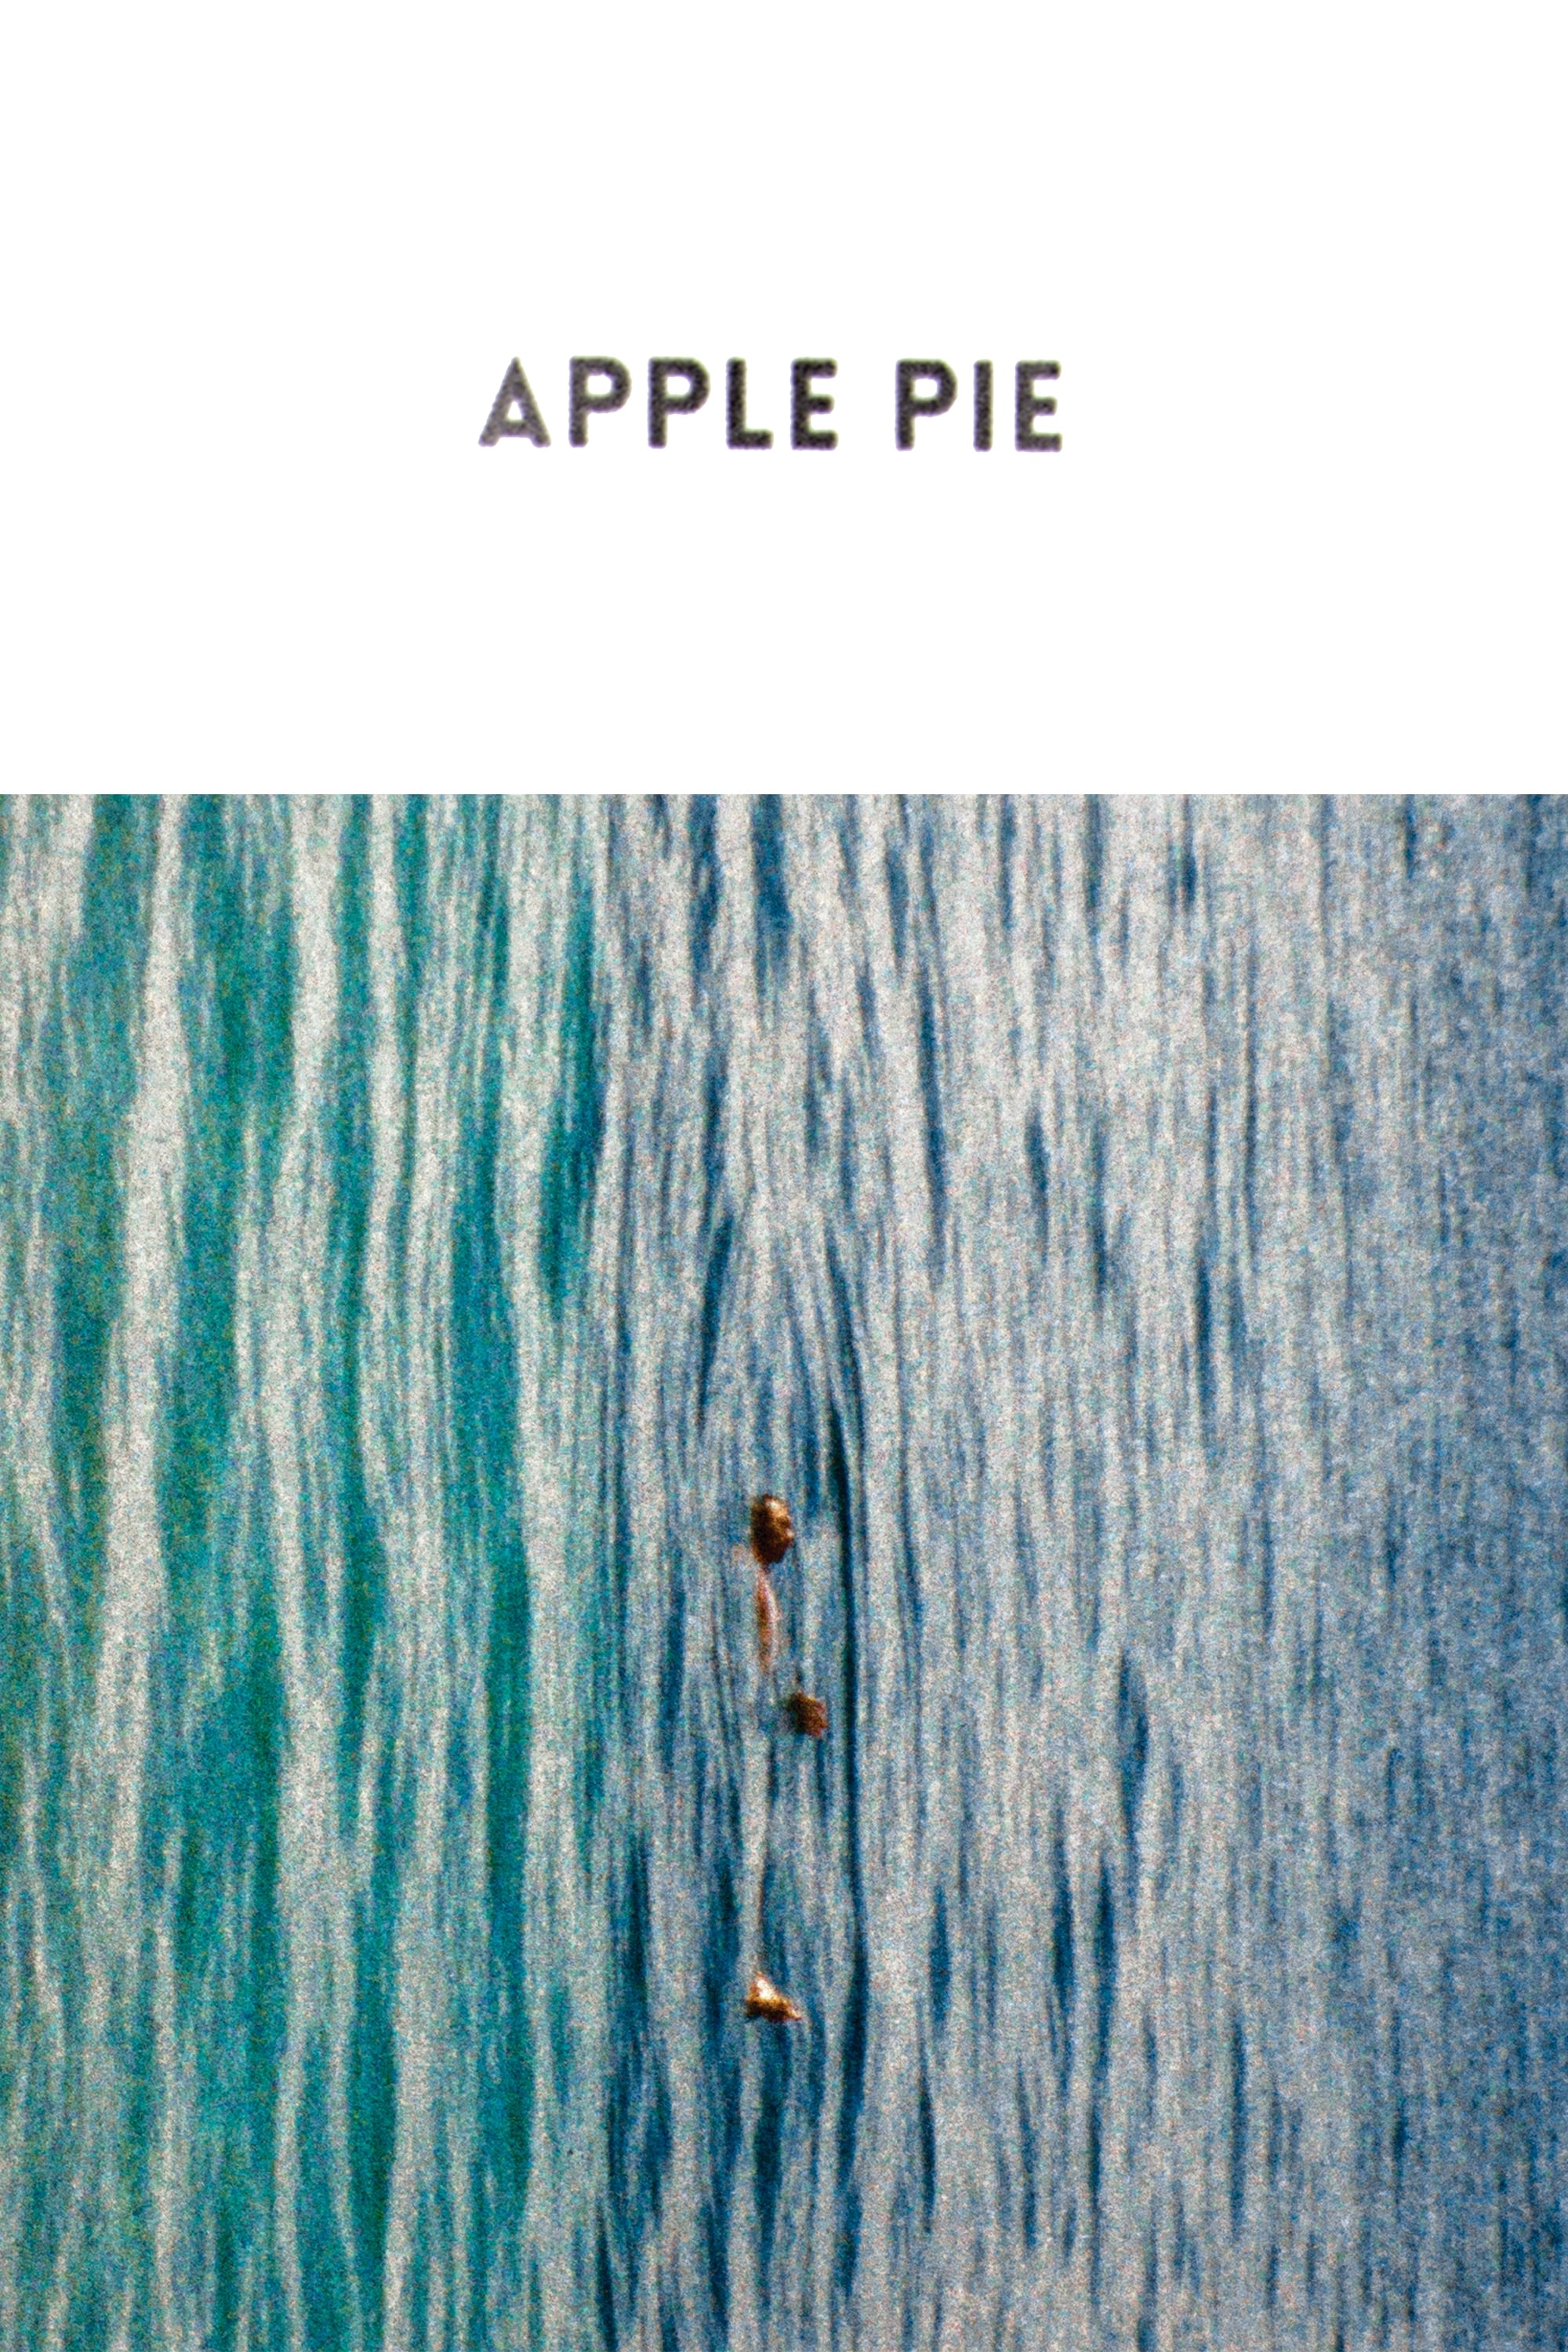 Apple Pie (2016)